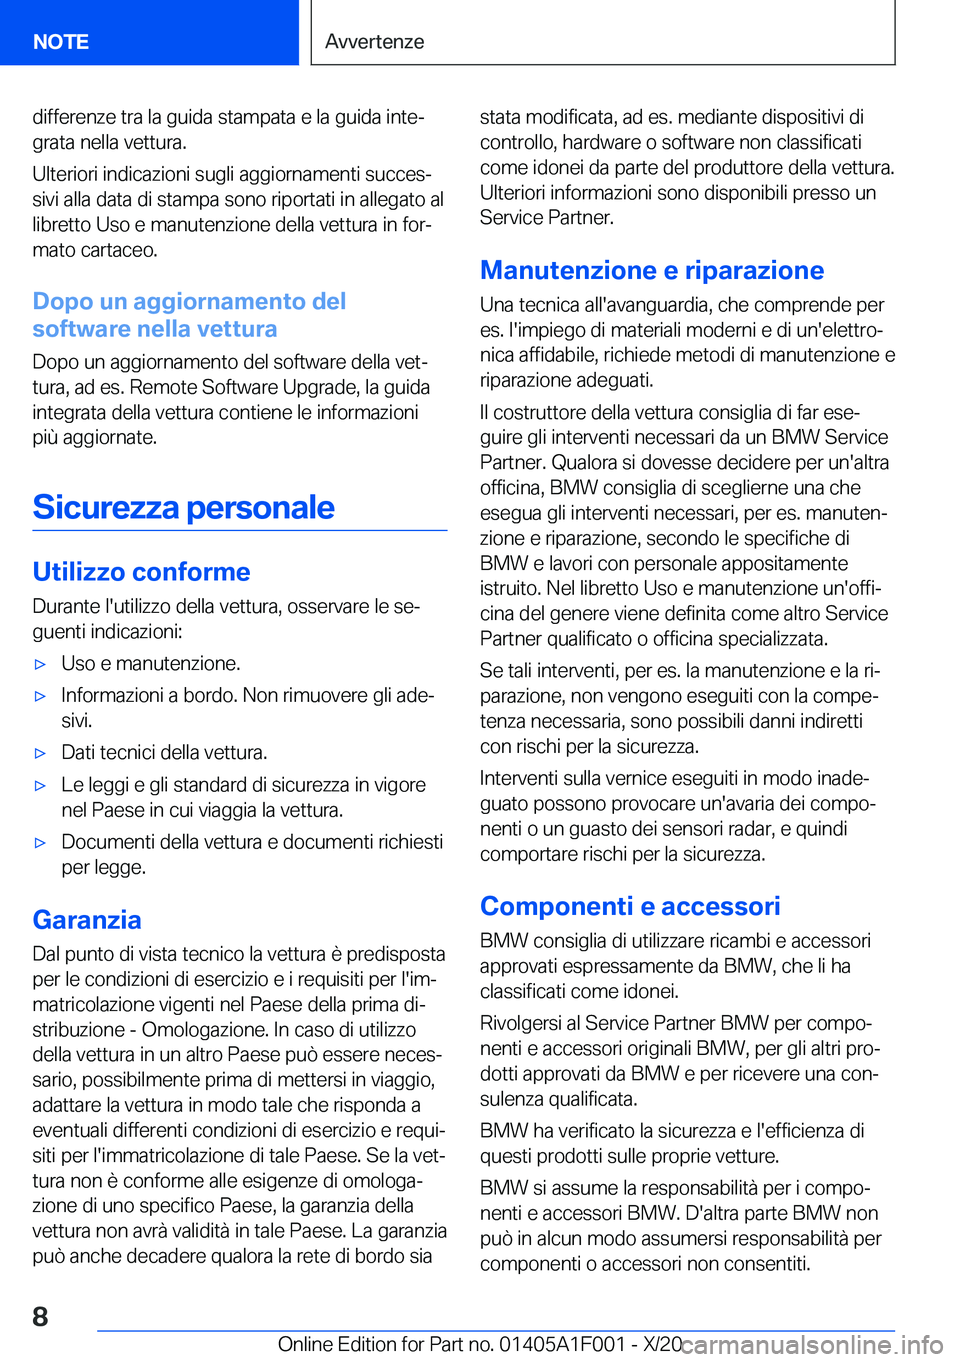 BMW X7 2021  Libretti Di Uso E manutenzione (in Italian) �d�i�f�f�e�r�e�n�z�e��t�r�a��l�a��g�u�i�d�a��s�t�a�m�p�a�t�a��e��l�a��g�u�i�d�a��i�n�t�eª�g�r�a�t�a��n�e�l�l�a��v�e�t�t�u�r�a�.
�U�l�t�e�r�i�o�r�i��i�n�d�i�c�a�z�i�o�n�i��s�u�g�l�i��a�g